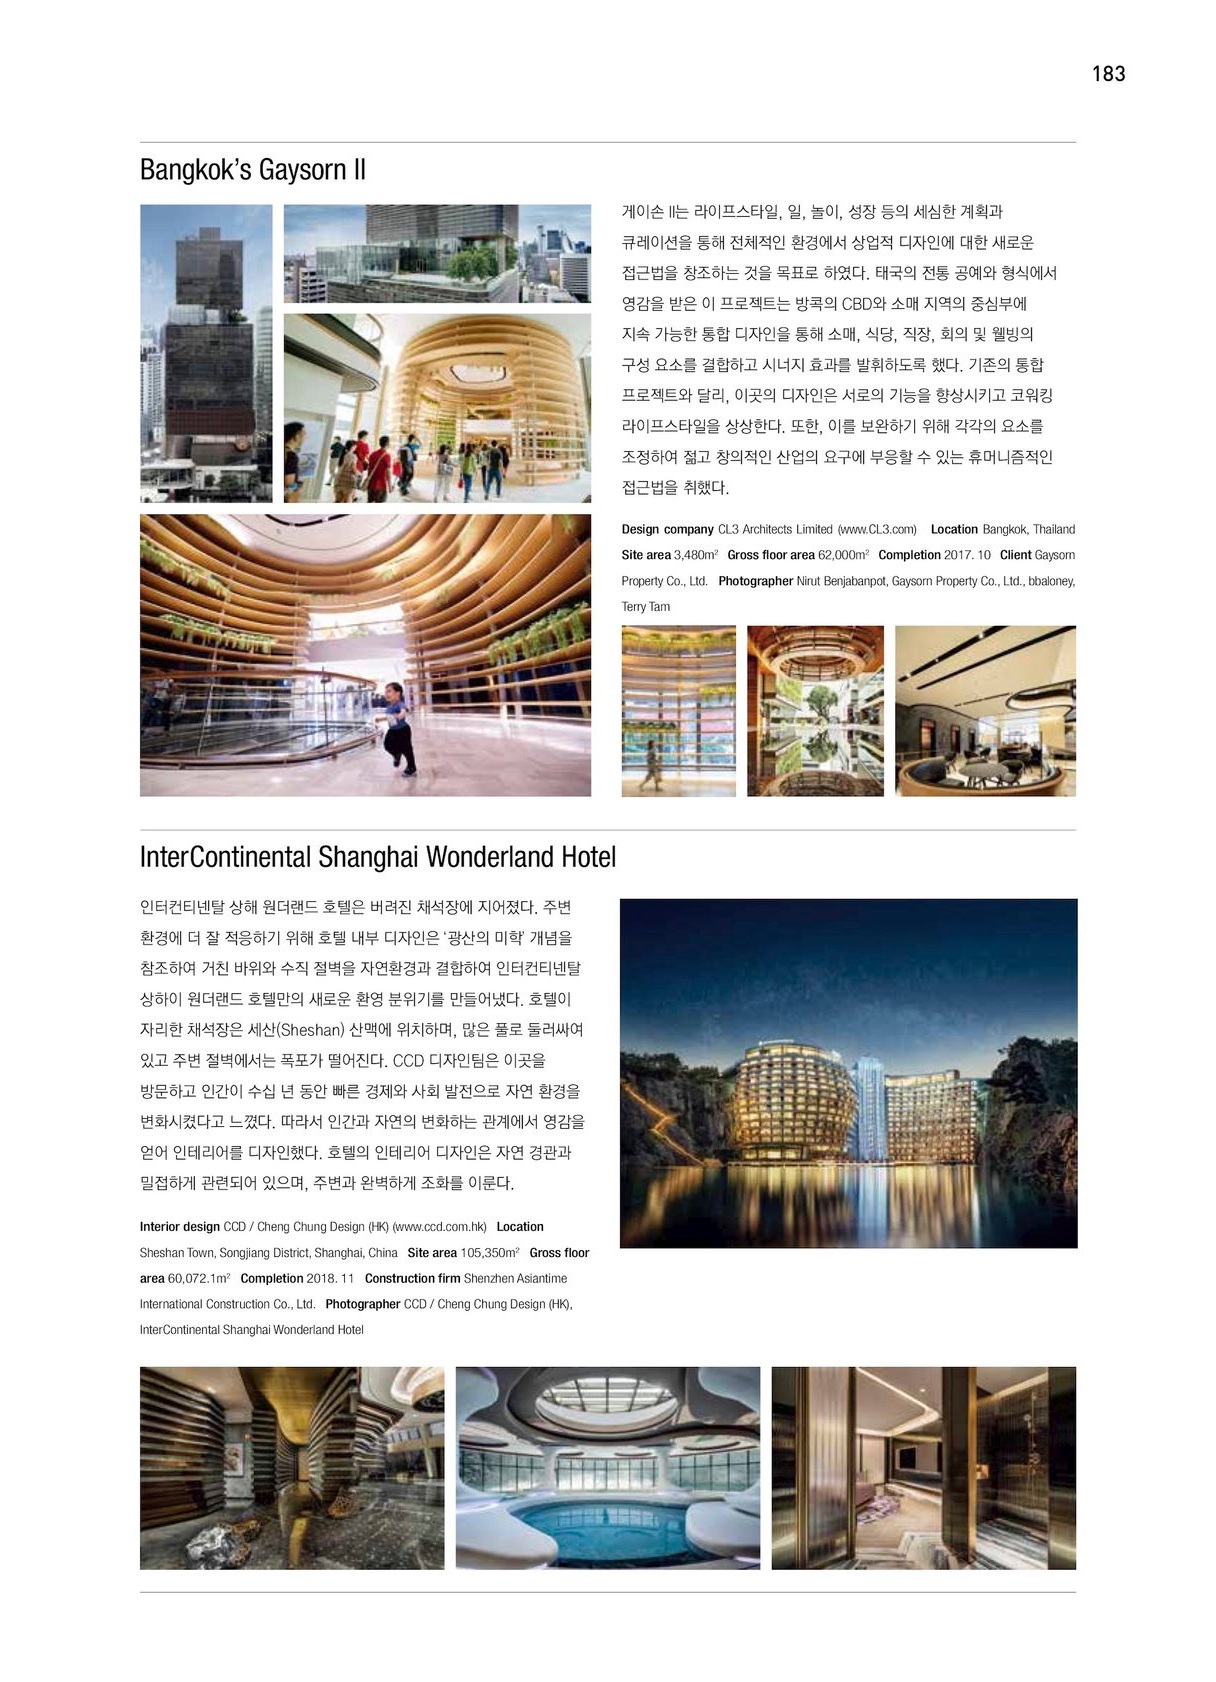 201908 韩国Architecture & Culture Gaysorn II-2-3.jpg